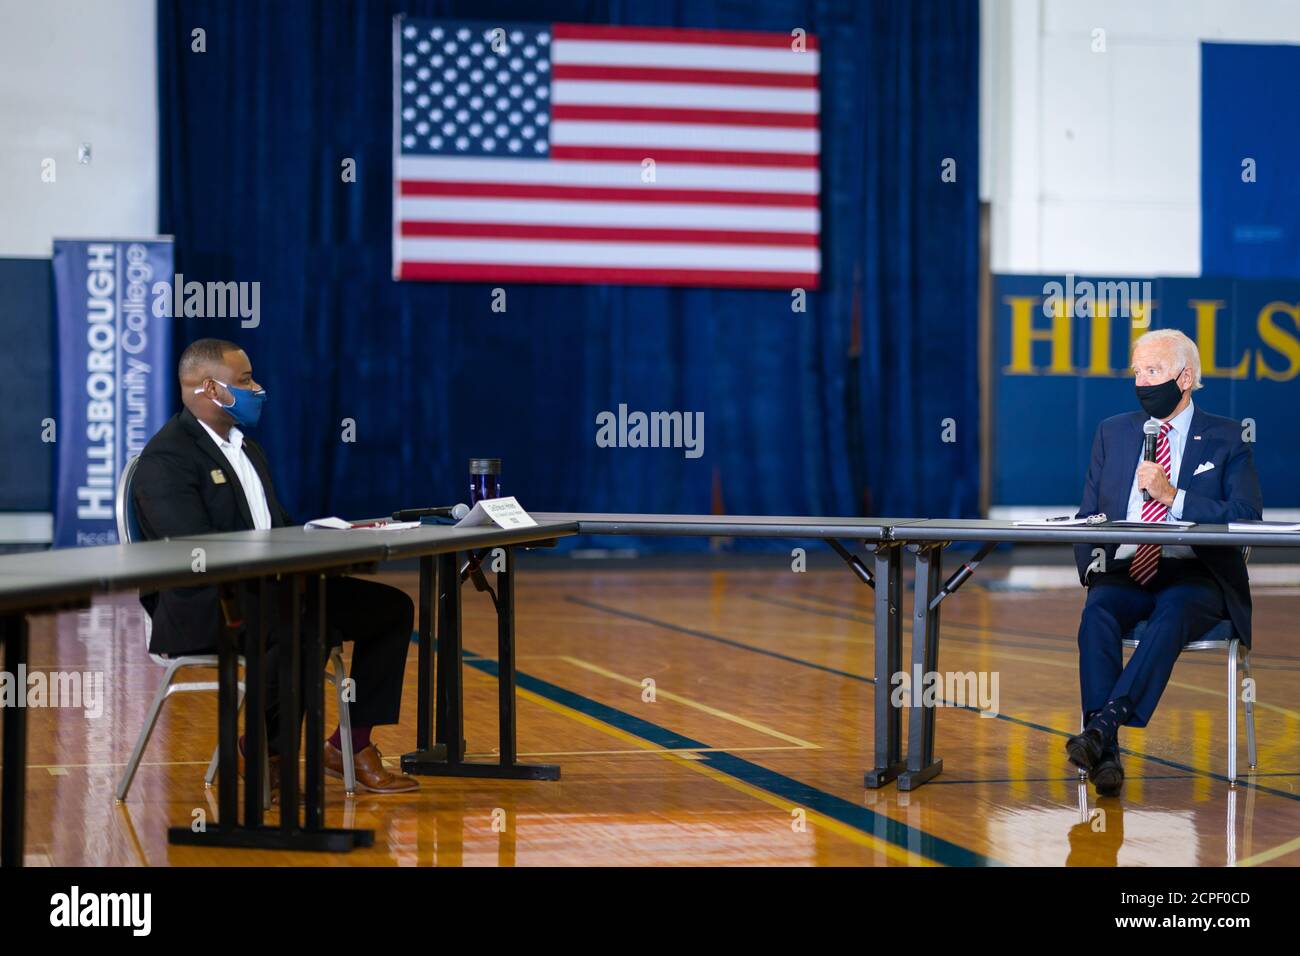 TAMPA, FL, USA - 15 settembre 2020 - il candidato presidenziale democratico americano Joe Biden partecipa a una tavola rotonda con i veterani militari statunitensi a Tampa, Florida, Foto Stock